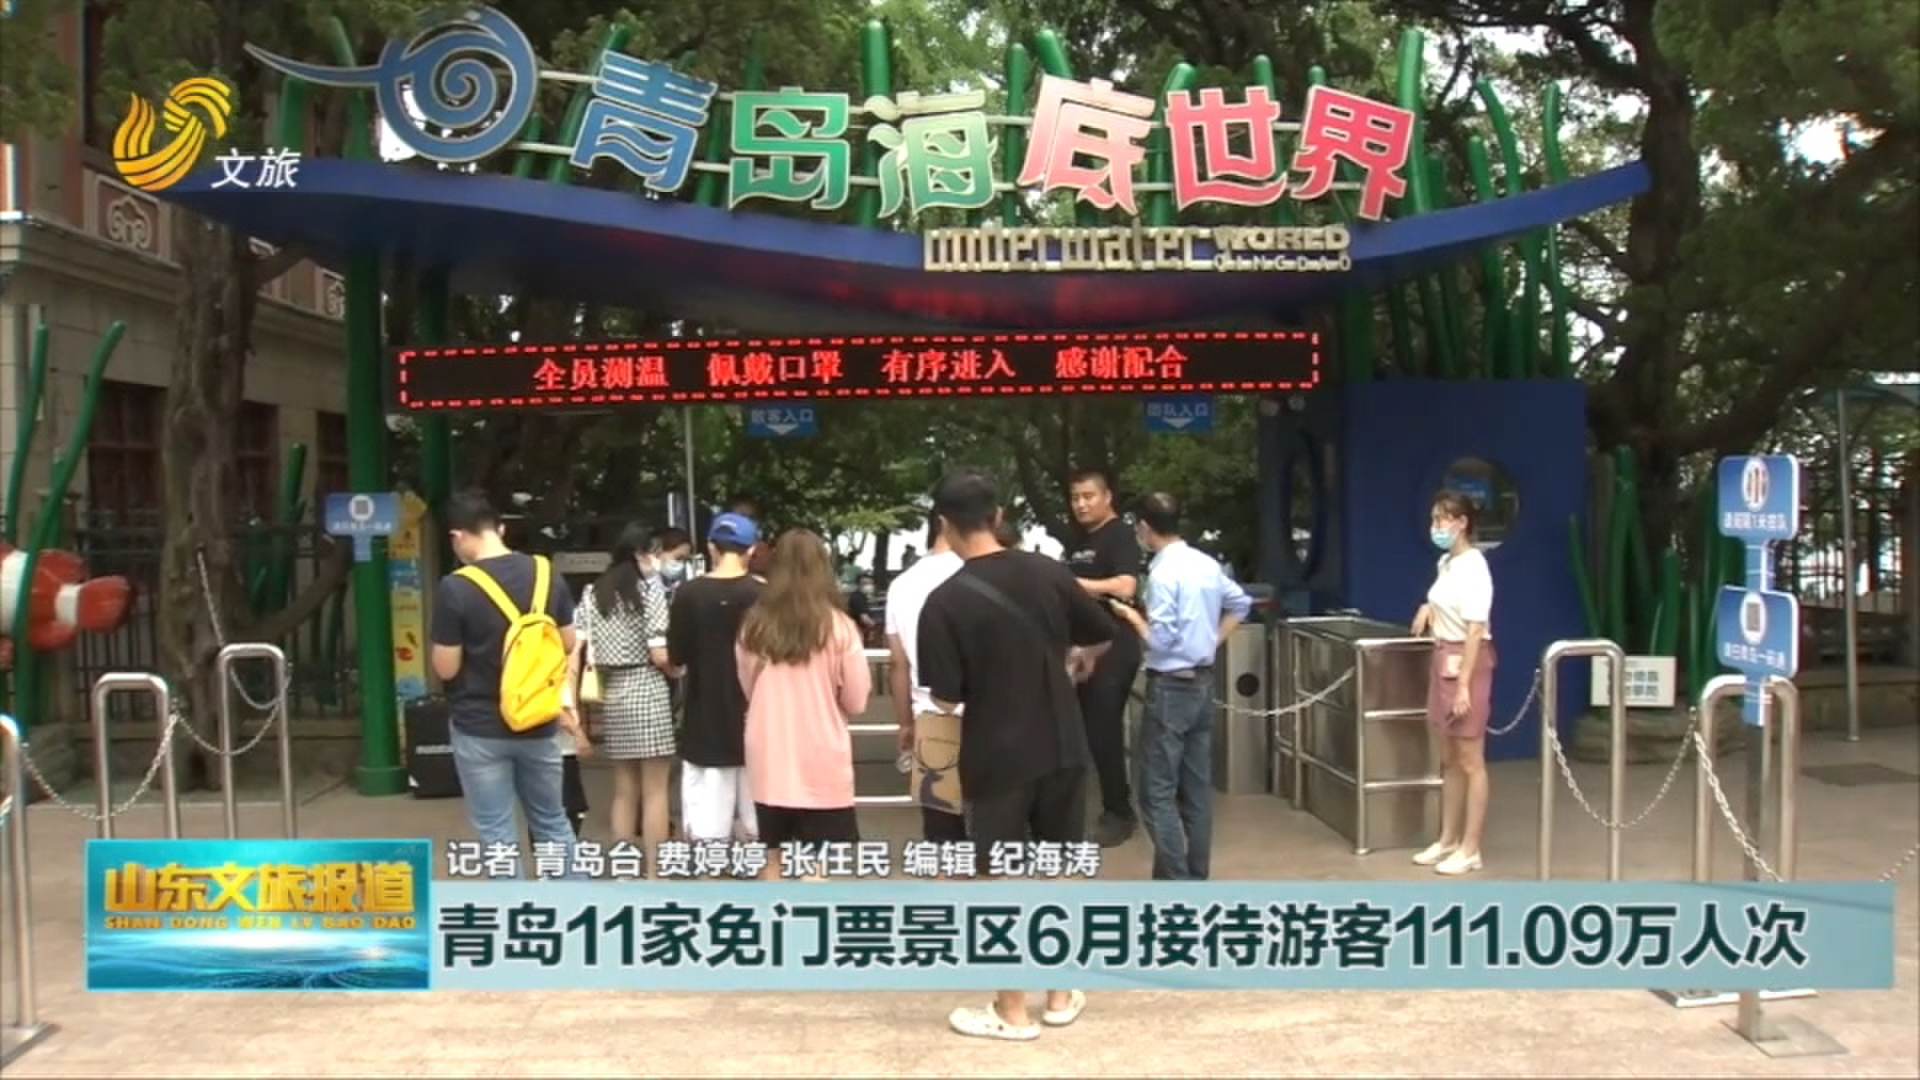 青岛11家免门票景区6月接待游客111.09万人次